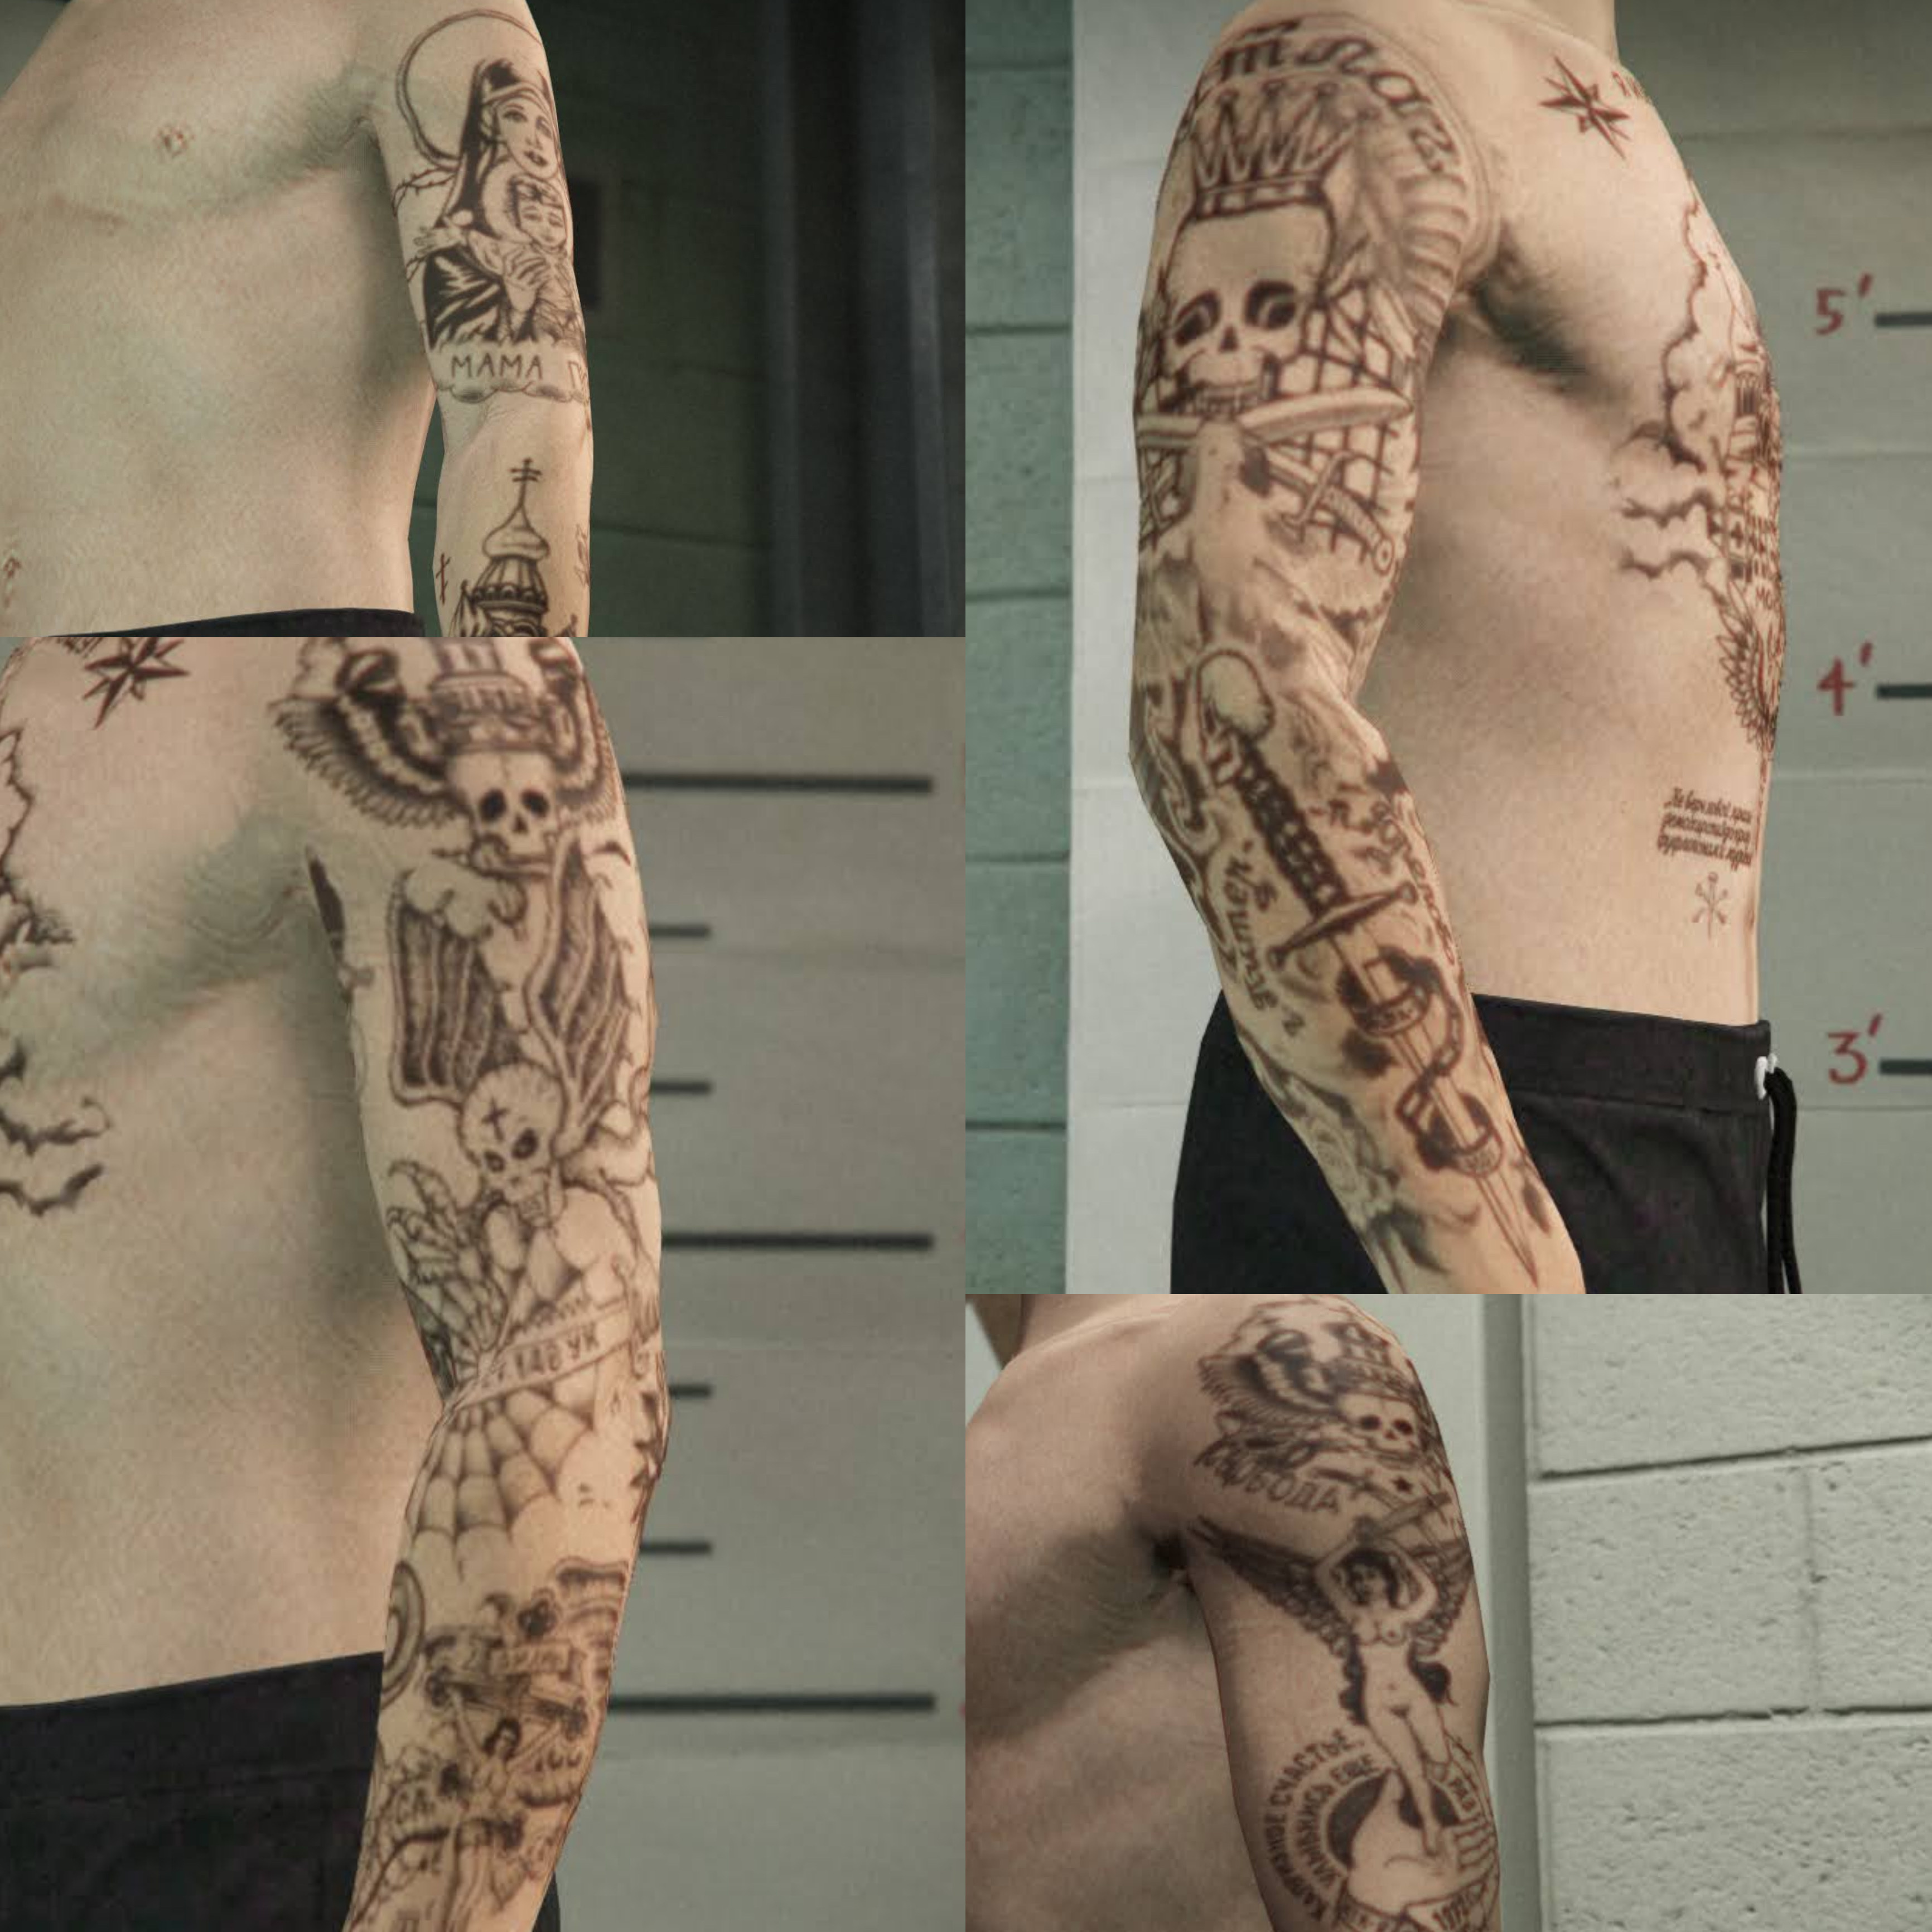 Letter M tatoo on wrist | Tattoo designs wrist, M tattoos, Letter m tattoos